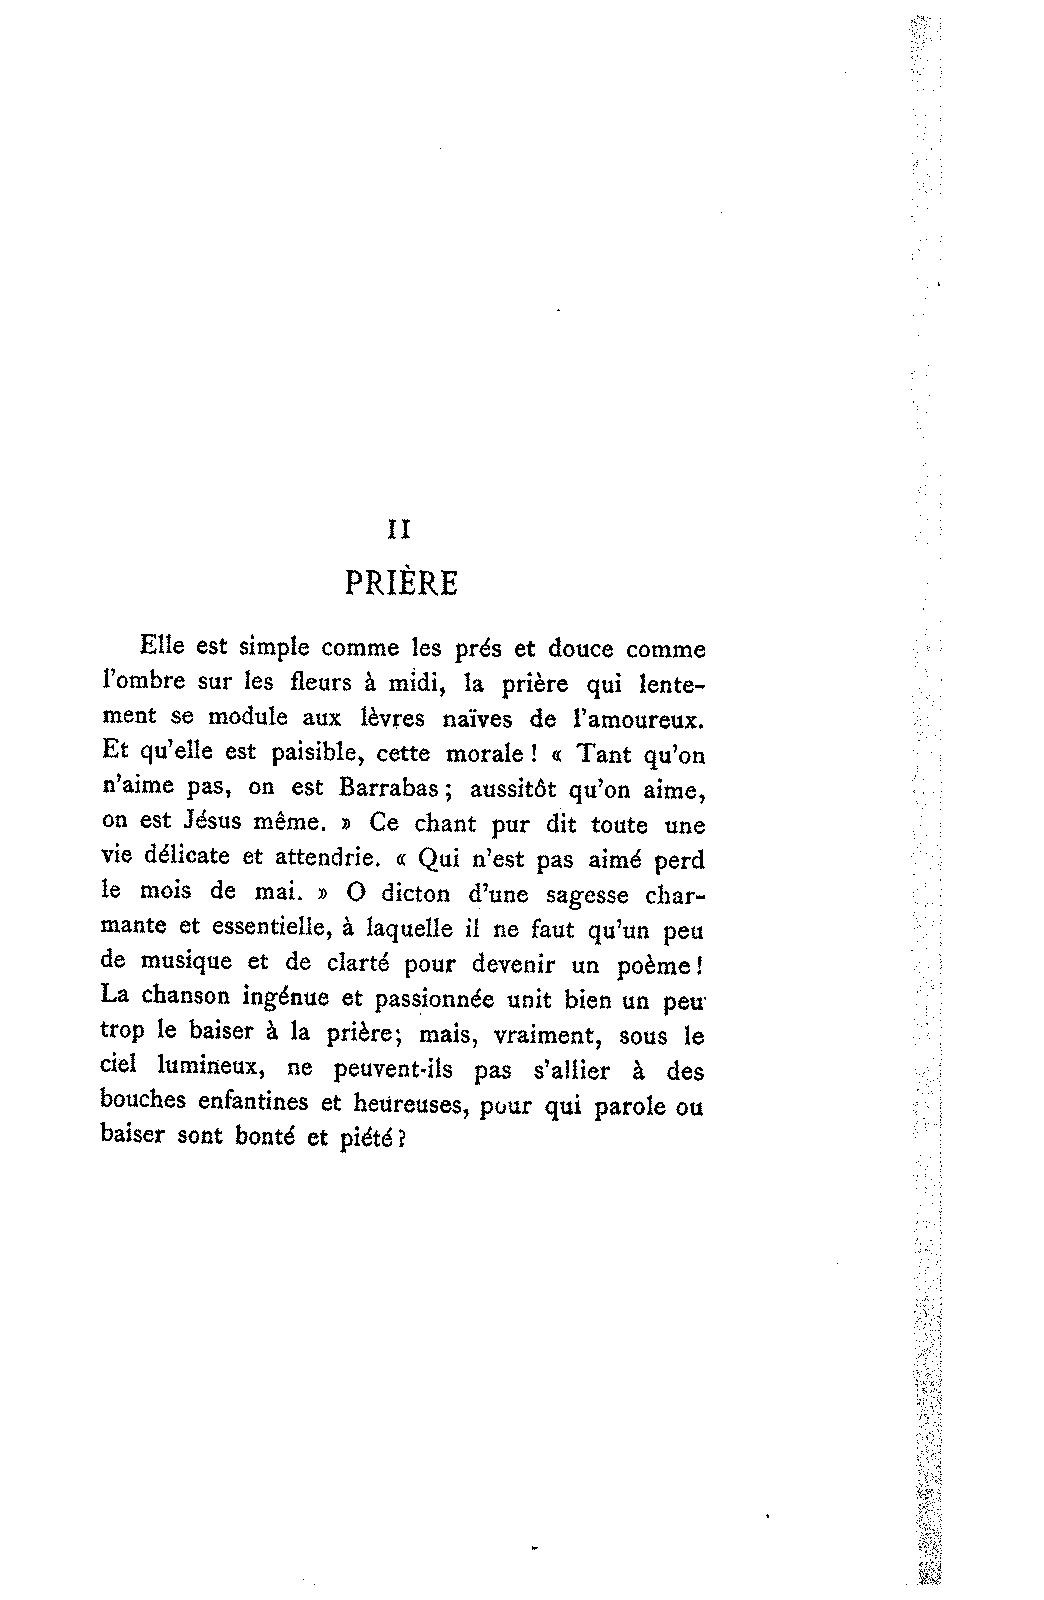 Prière (Charpentier, Gustave) - IMSLP